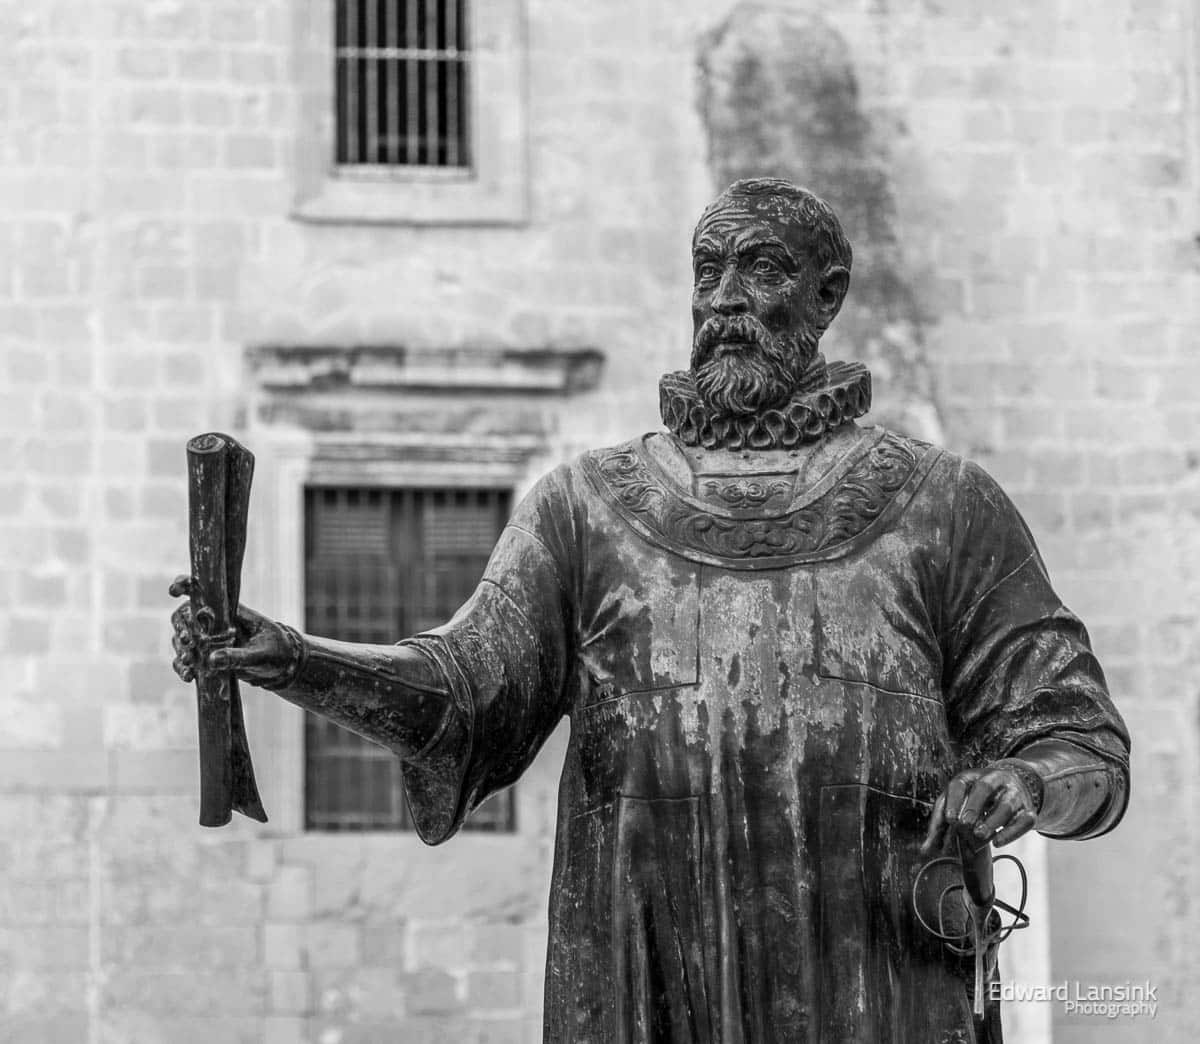 Statue of Jean Parisot de Valette in Valletta.